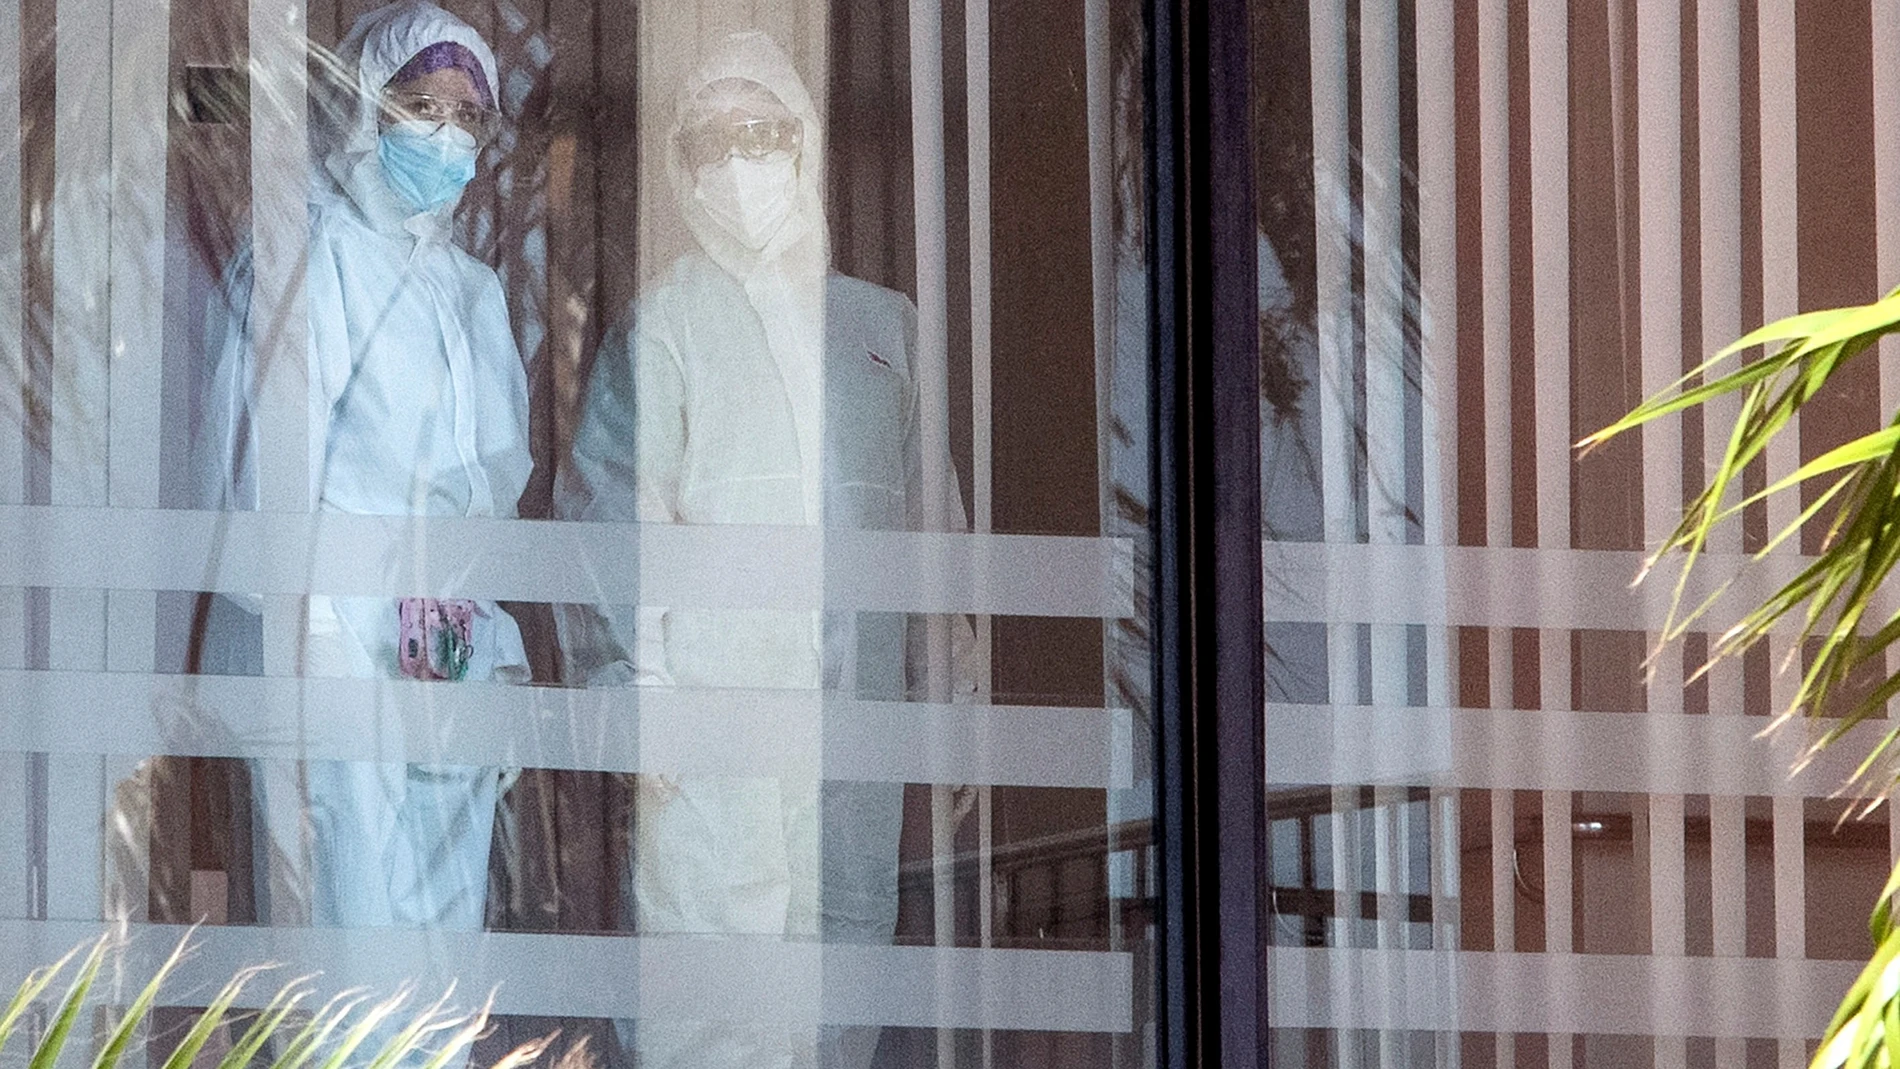 Junta prepara medicalización de residencia con 129 contagiados de covid 19